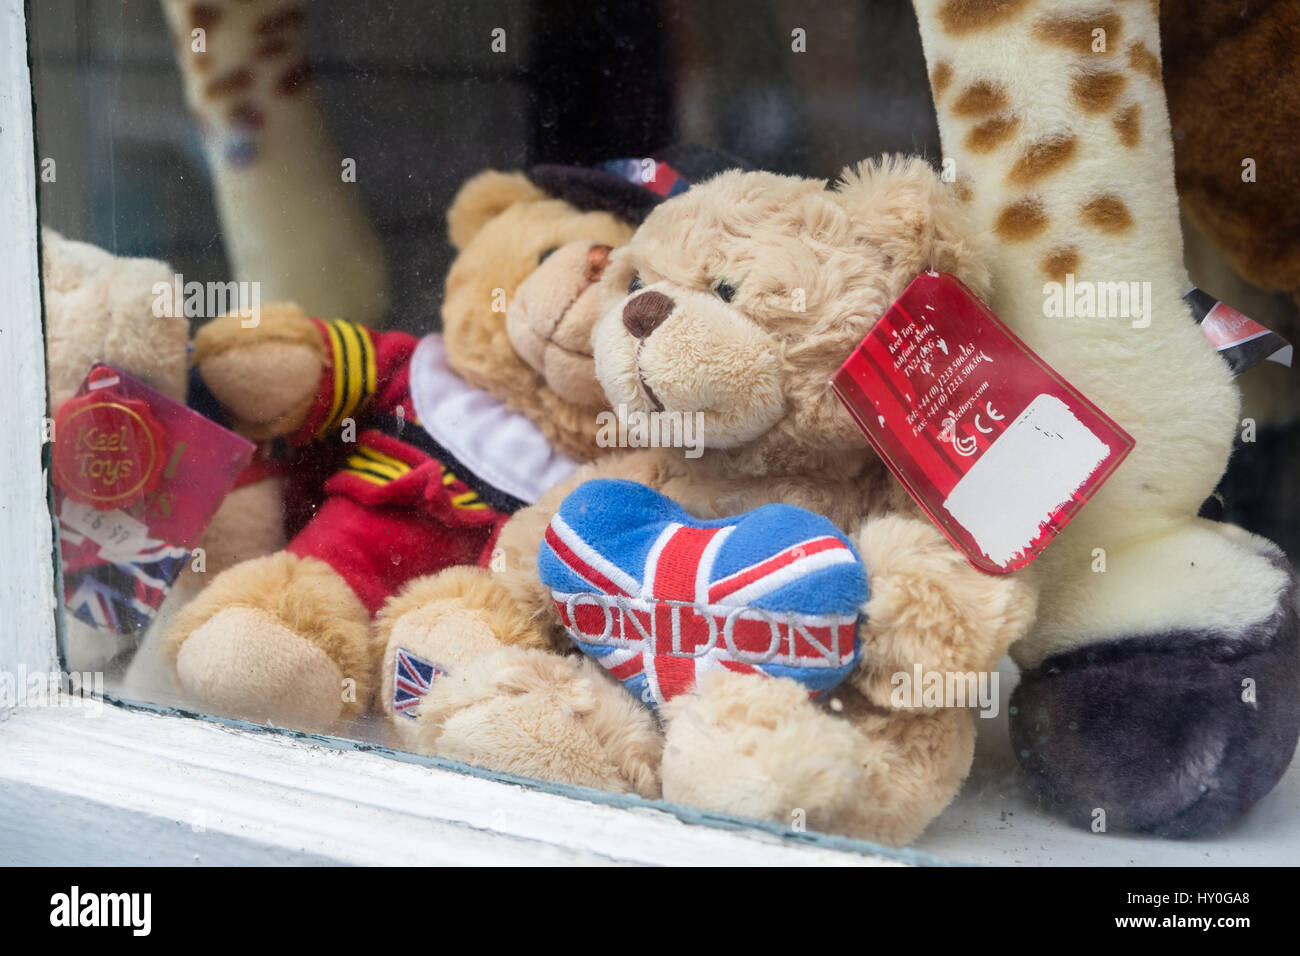 Windsor, Reino Unido - 18 de marzo de 2017: osos de peluche en una ventana de la tienda de souvenirs en la popular localidad turística de windsor en marzo de 2017. Foto de stock